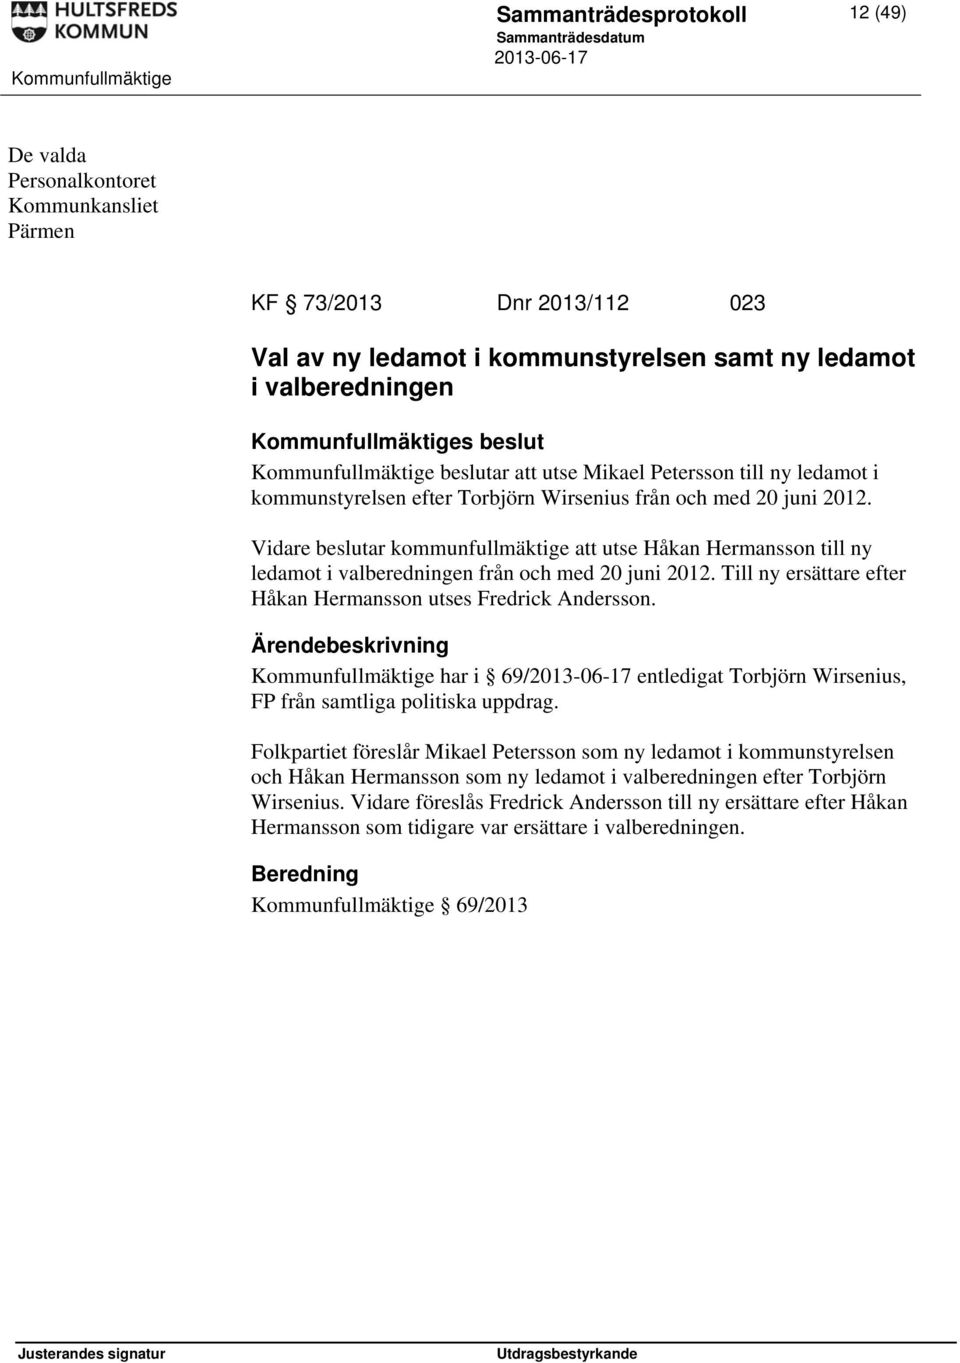 Vidare beslutar kommunfullmäktige att utse Håkan Hermansson till ny ledamot i valberedningen från och med 20 juni 2012. Till ny ersättare efter Håkan Hermansson utses Fredrick Andersson.